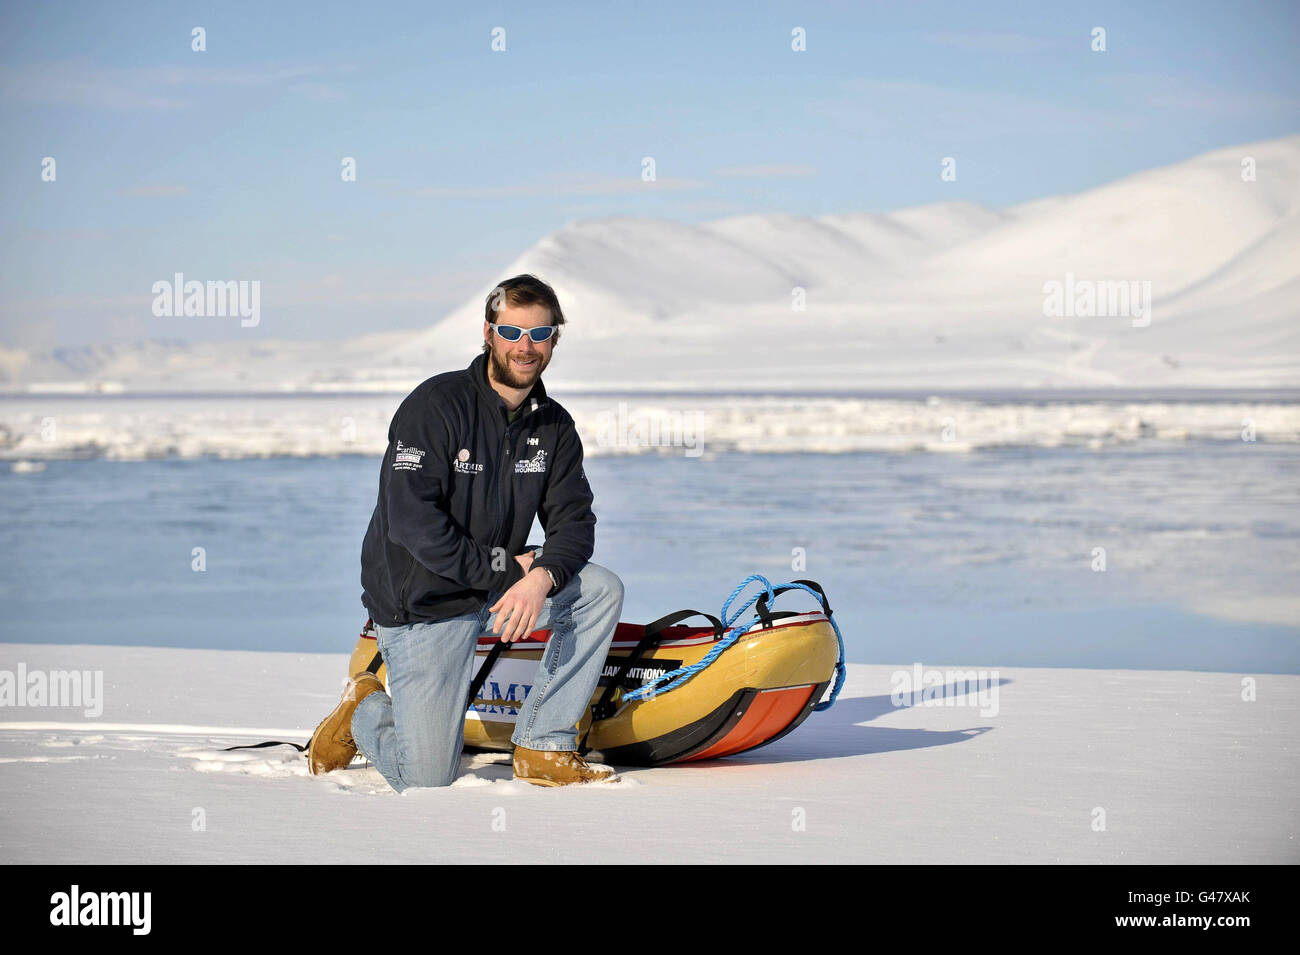 Der Kapitän der britischen Armee, Guy Disney, der ein Amputierter ist, kommt nach einer erfolgreichen Reise zum Nordpol mit dem Team der verwundeten Soldaten zurück nach Longyearbyen, auf den arktischen norewgischen Inseln Svalbard. Stockfoto